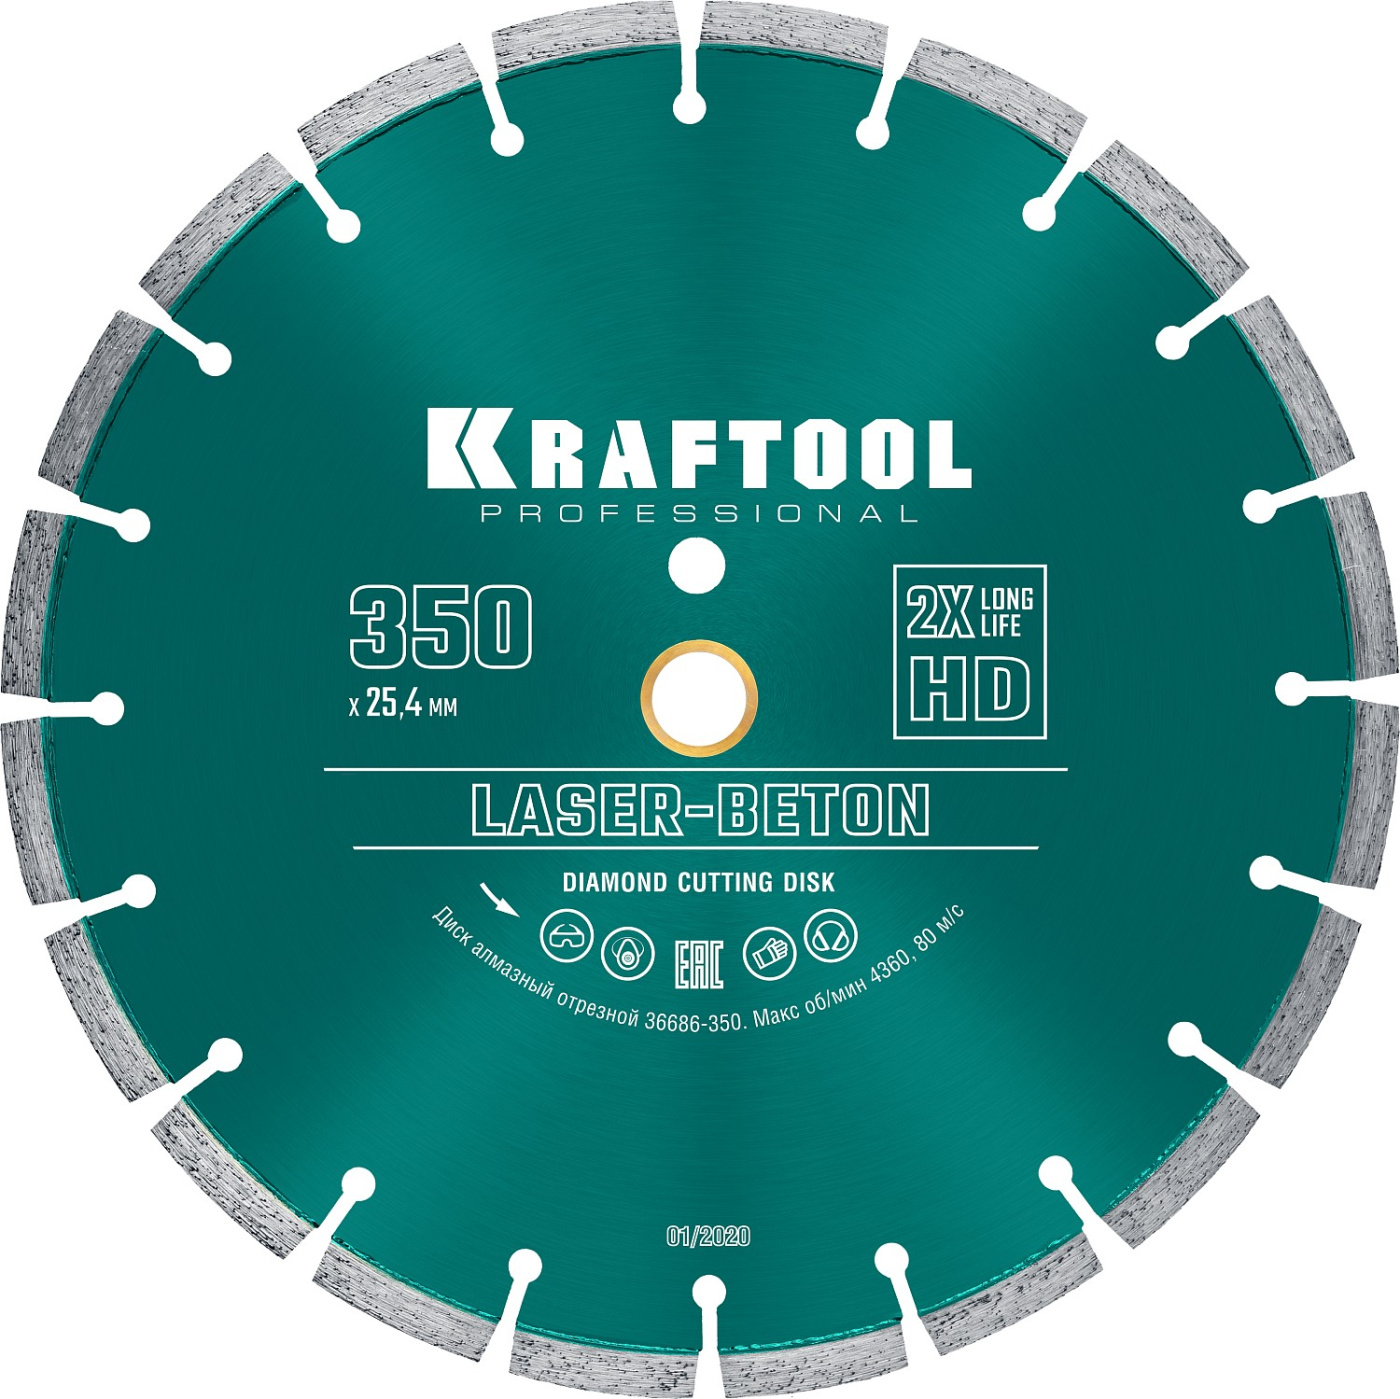 KRAFTOOL Laser-Beton, 350 мм, (25.4/20 мм, 10 х 3.2 мм), сегментный алмазный диск (36686-350)